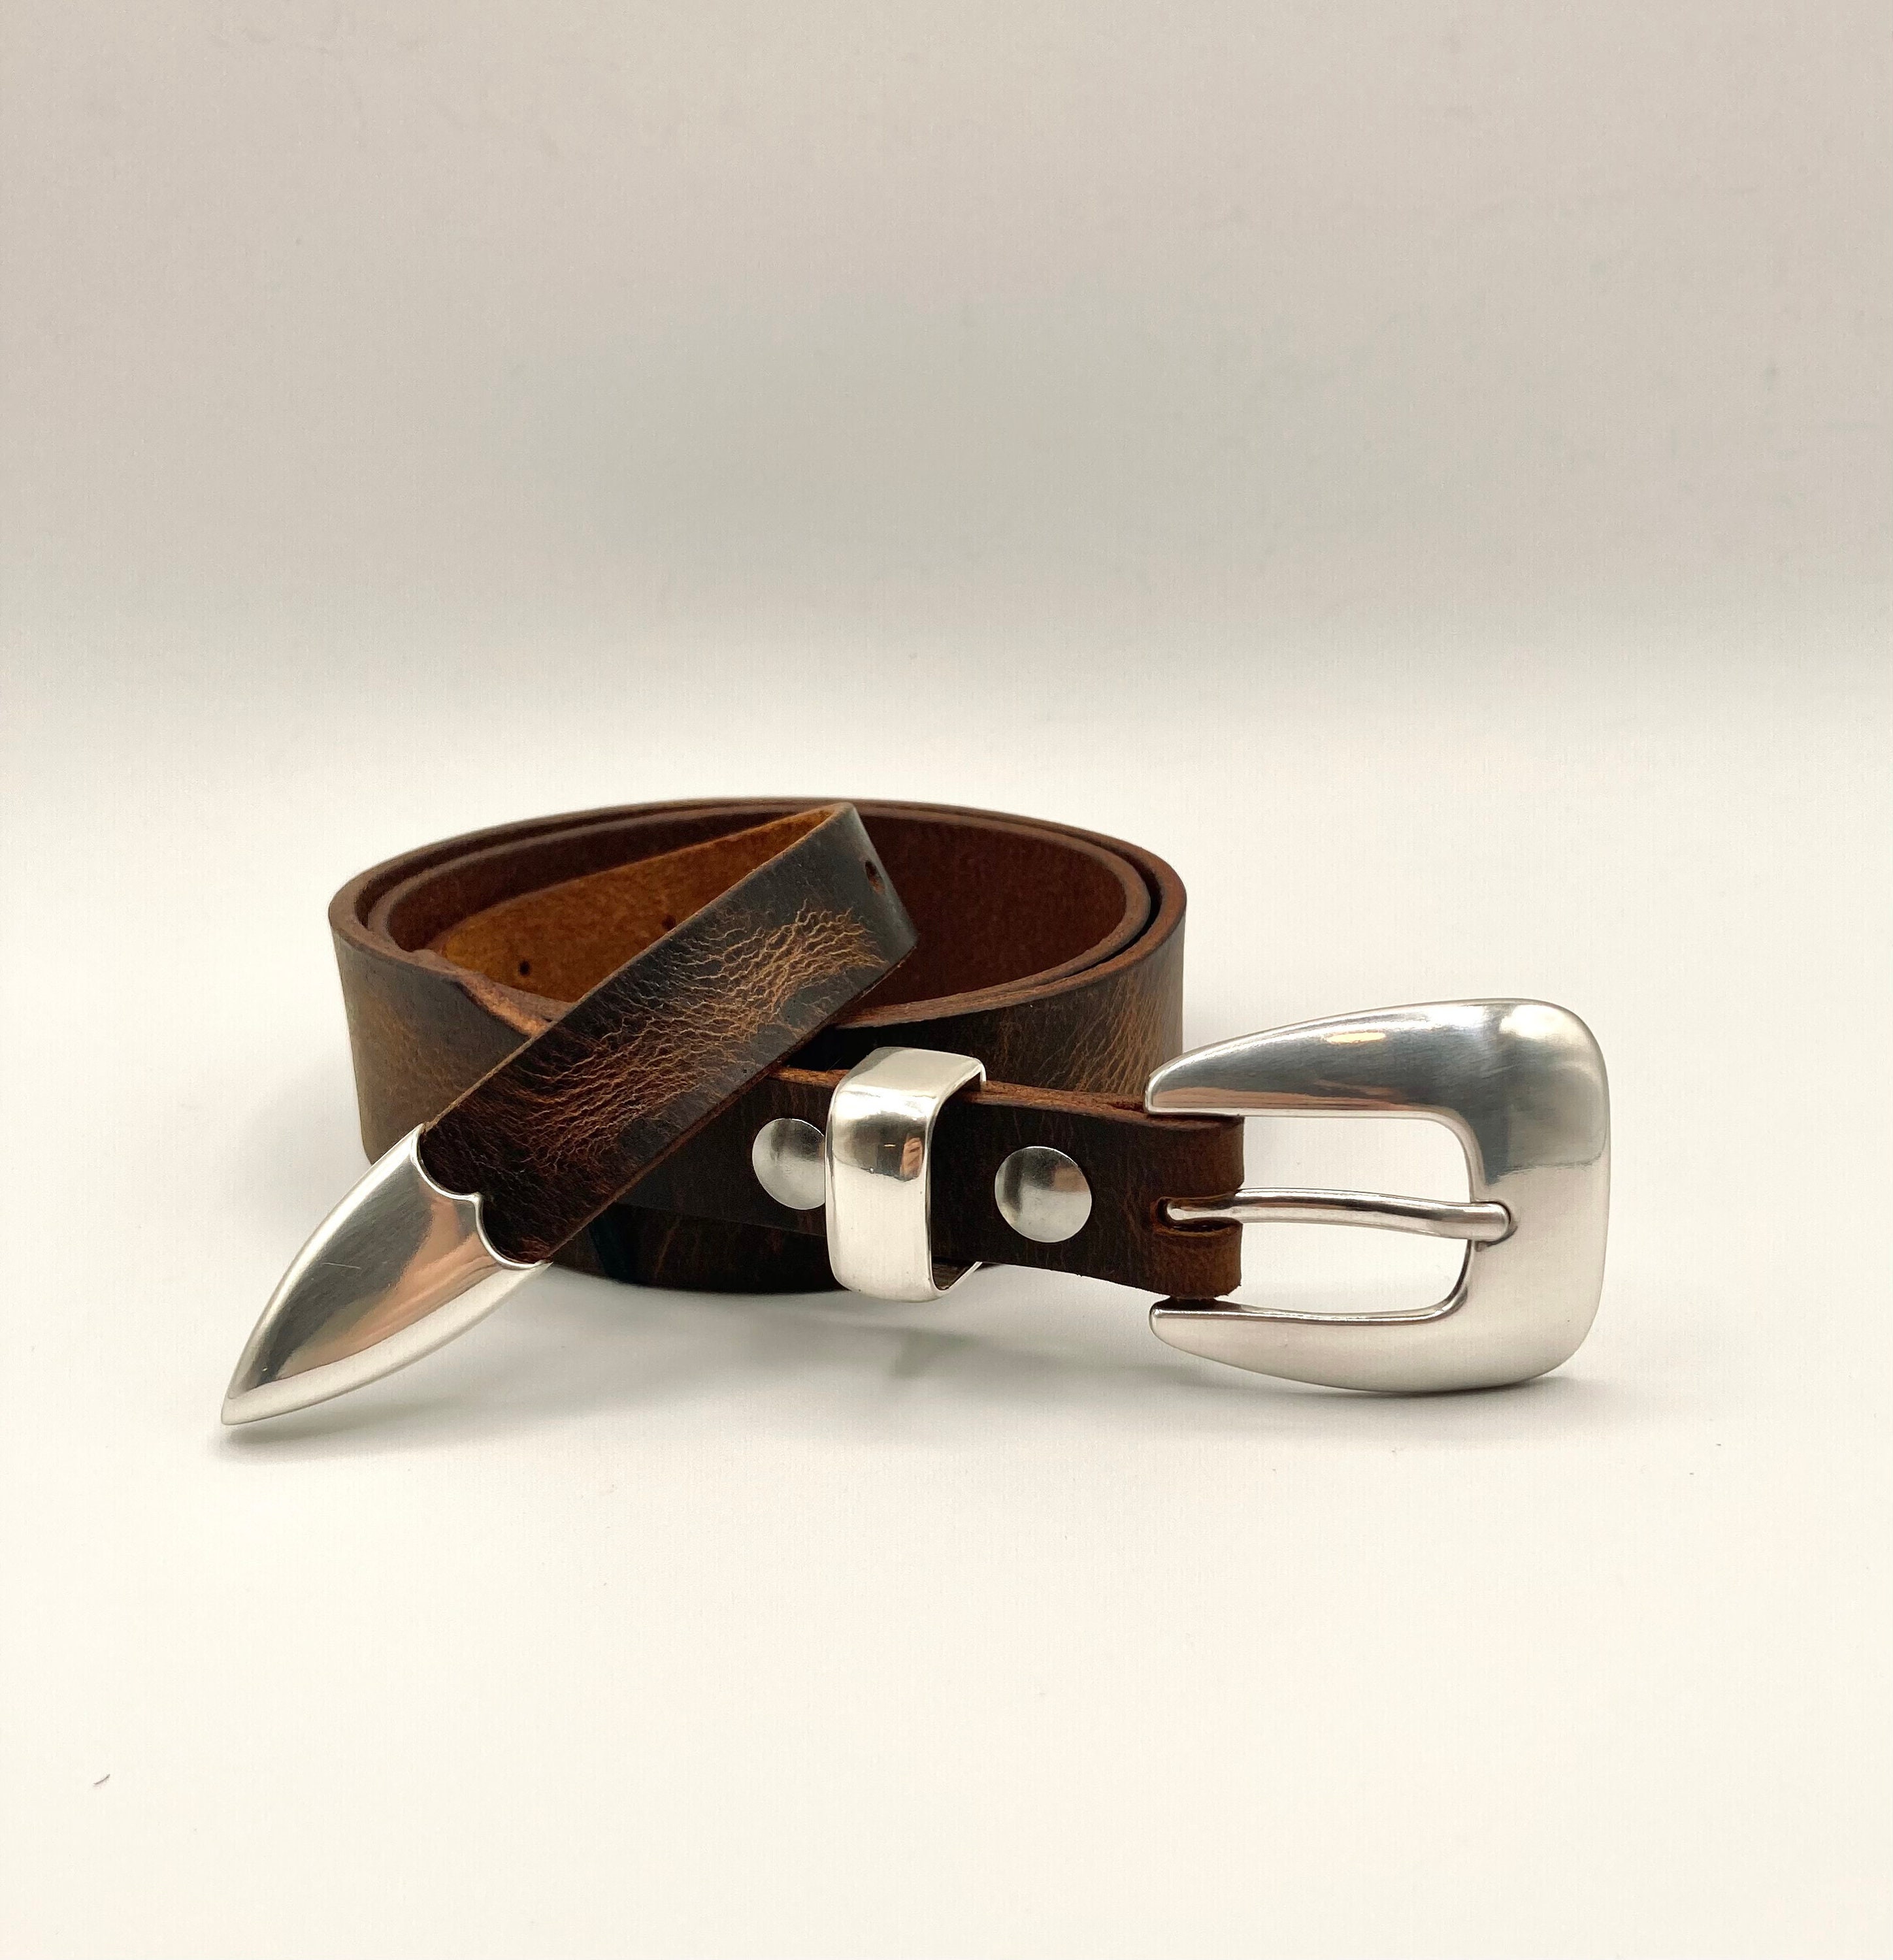 Custom Designer AAA Replica Belts PU Leather Buckle Ladies Western